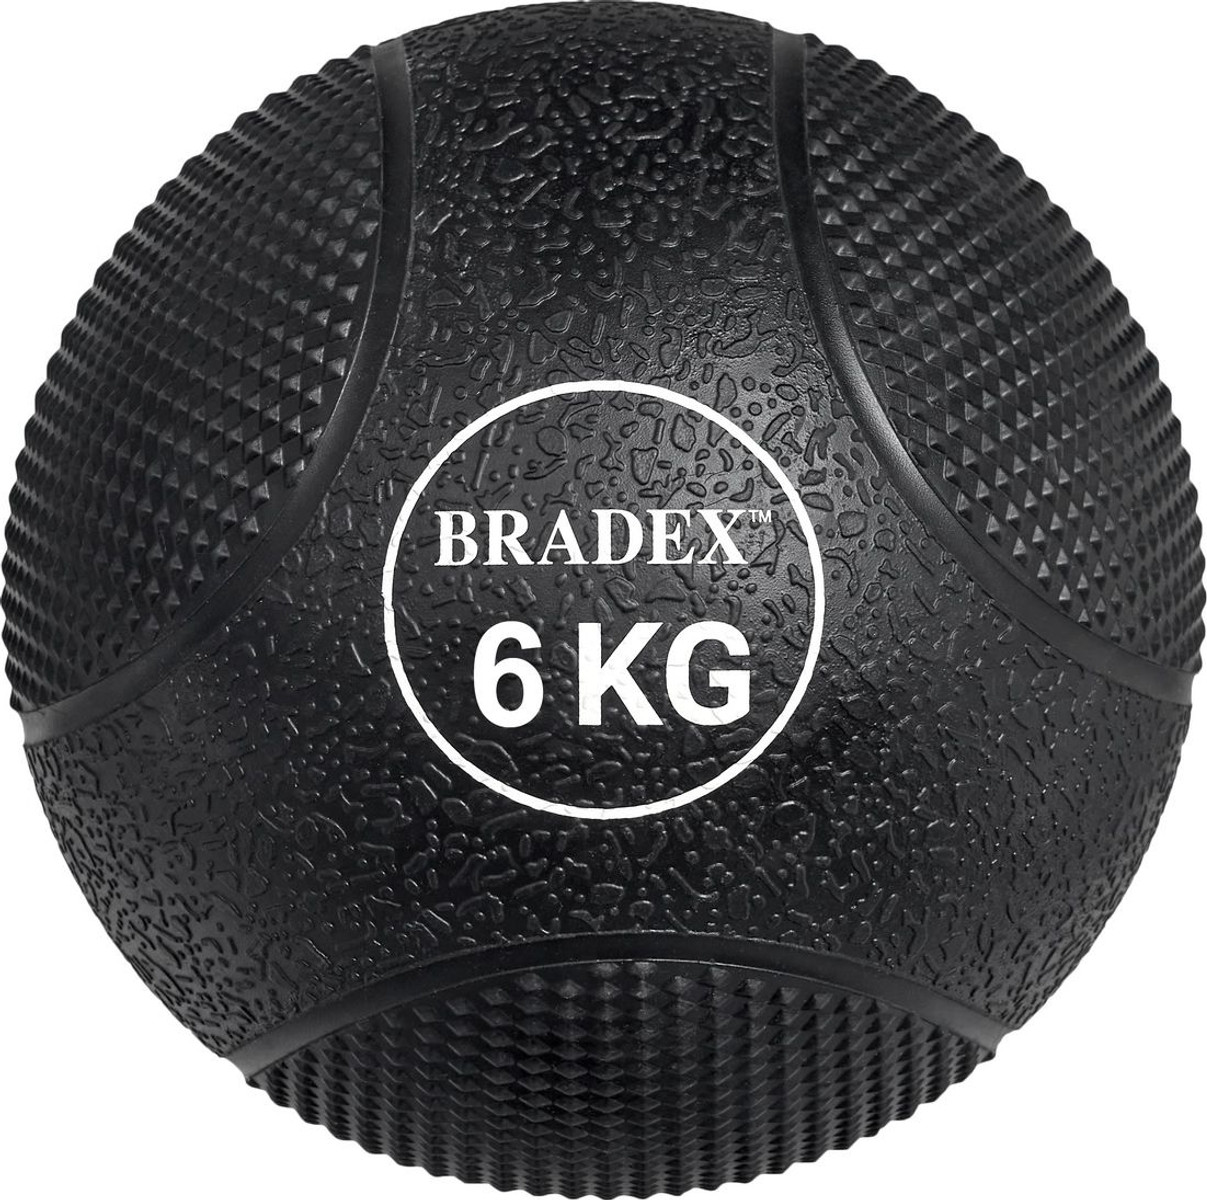 Мяч Bradex SF 0775 (6 кг)